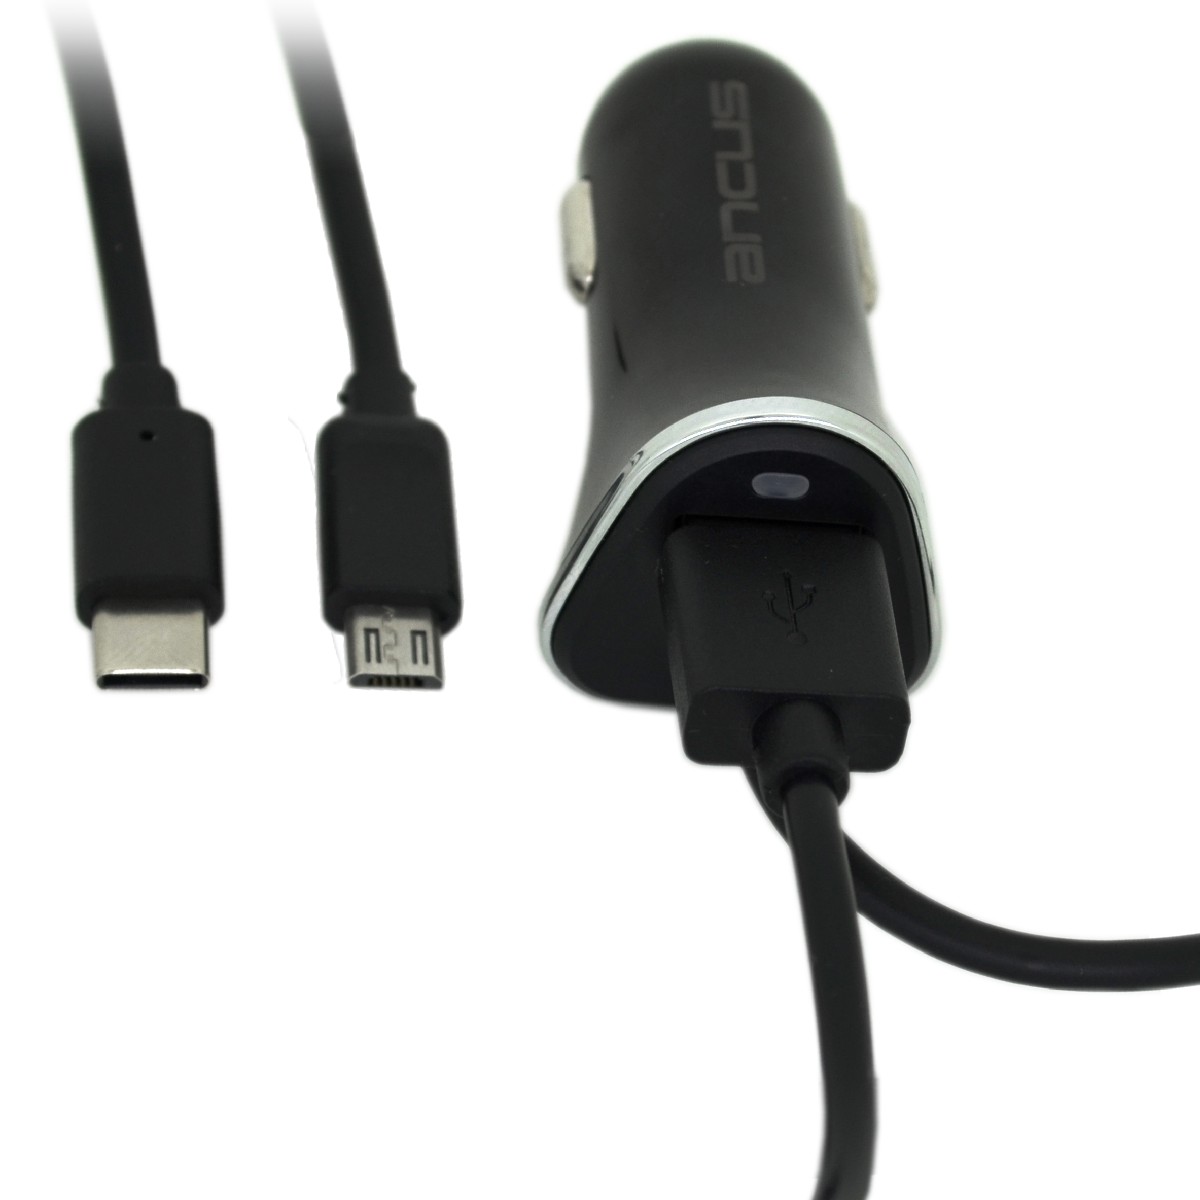 Φορτιστής Αυτοκινήτου Ancus USB 2400 mAh 5V 12W με Καλώδιο Micro USB και Έξτρα Έξοδο USB 12/24V + Καλώδιο σύνδεσης Jasper USB-C 2,1Α 1m